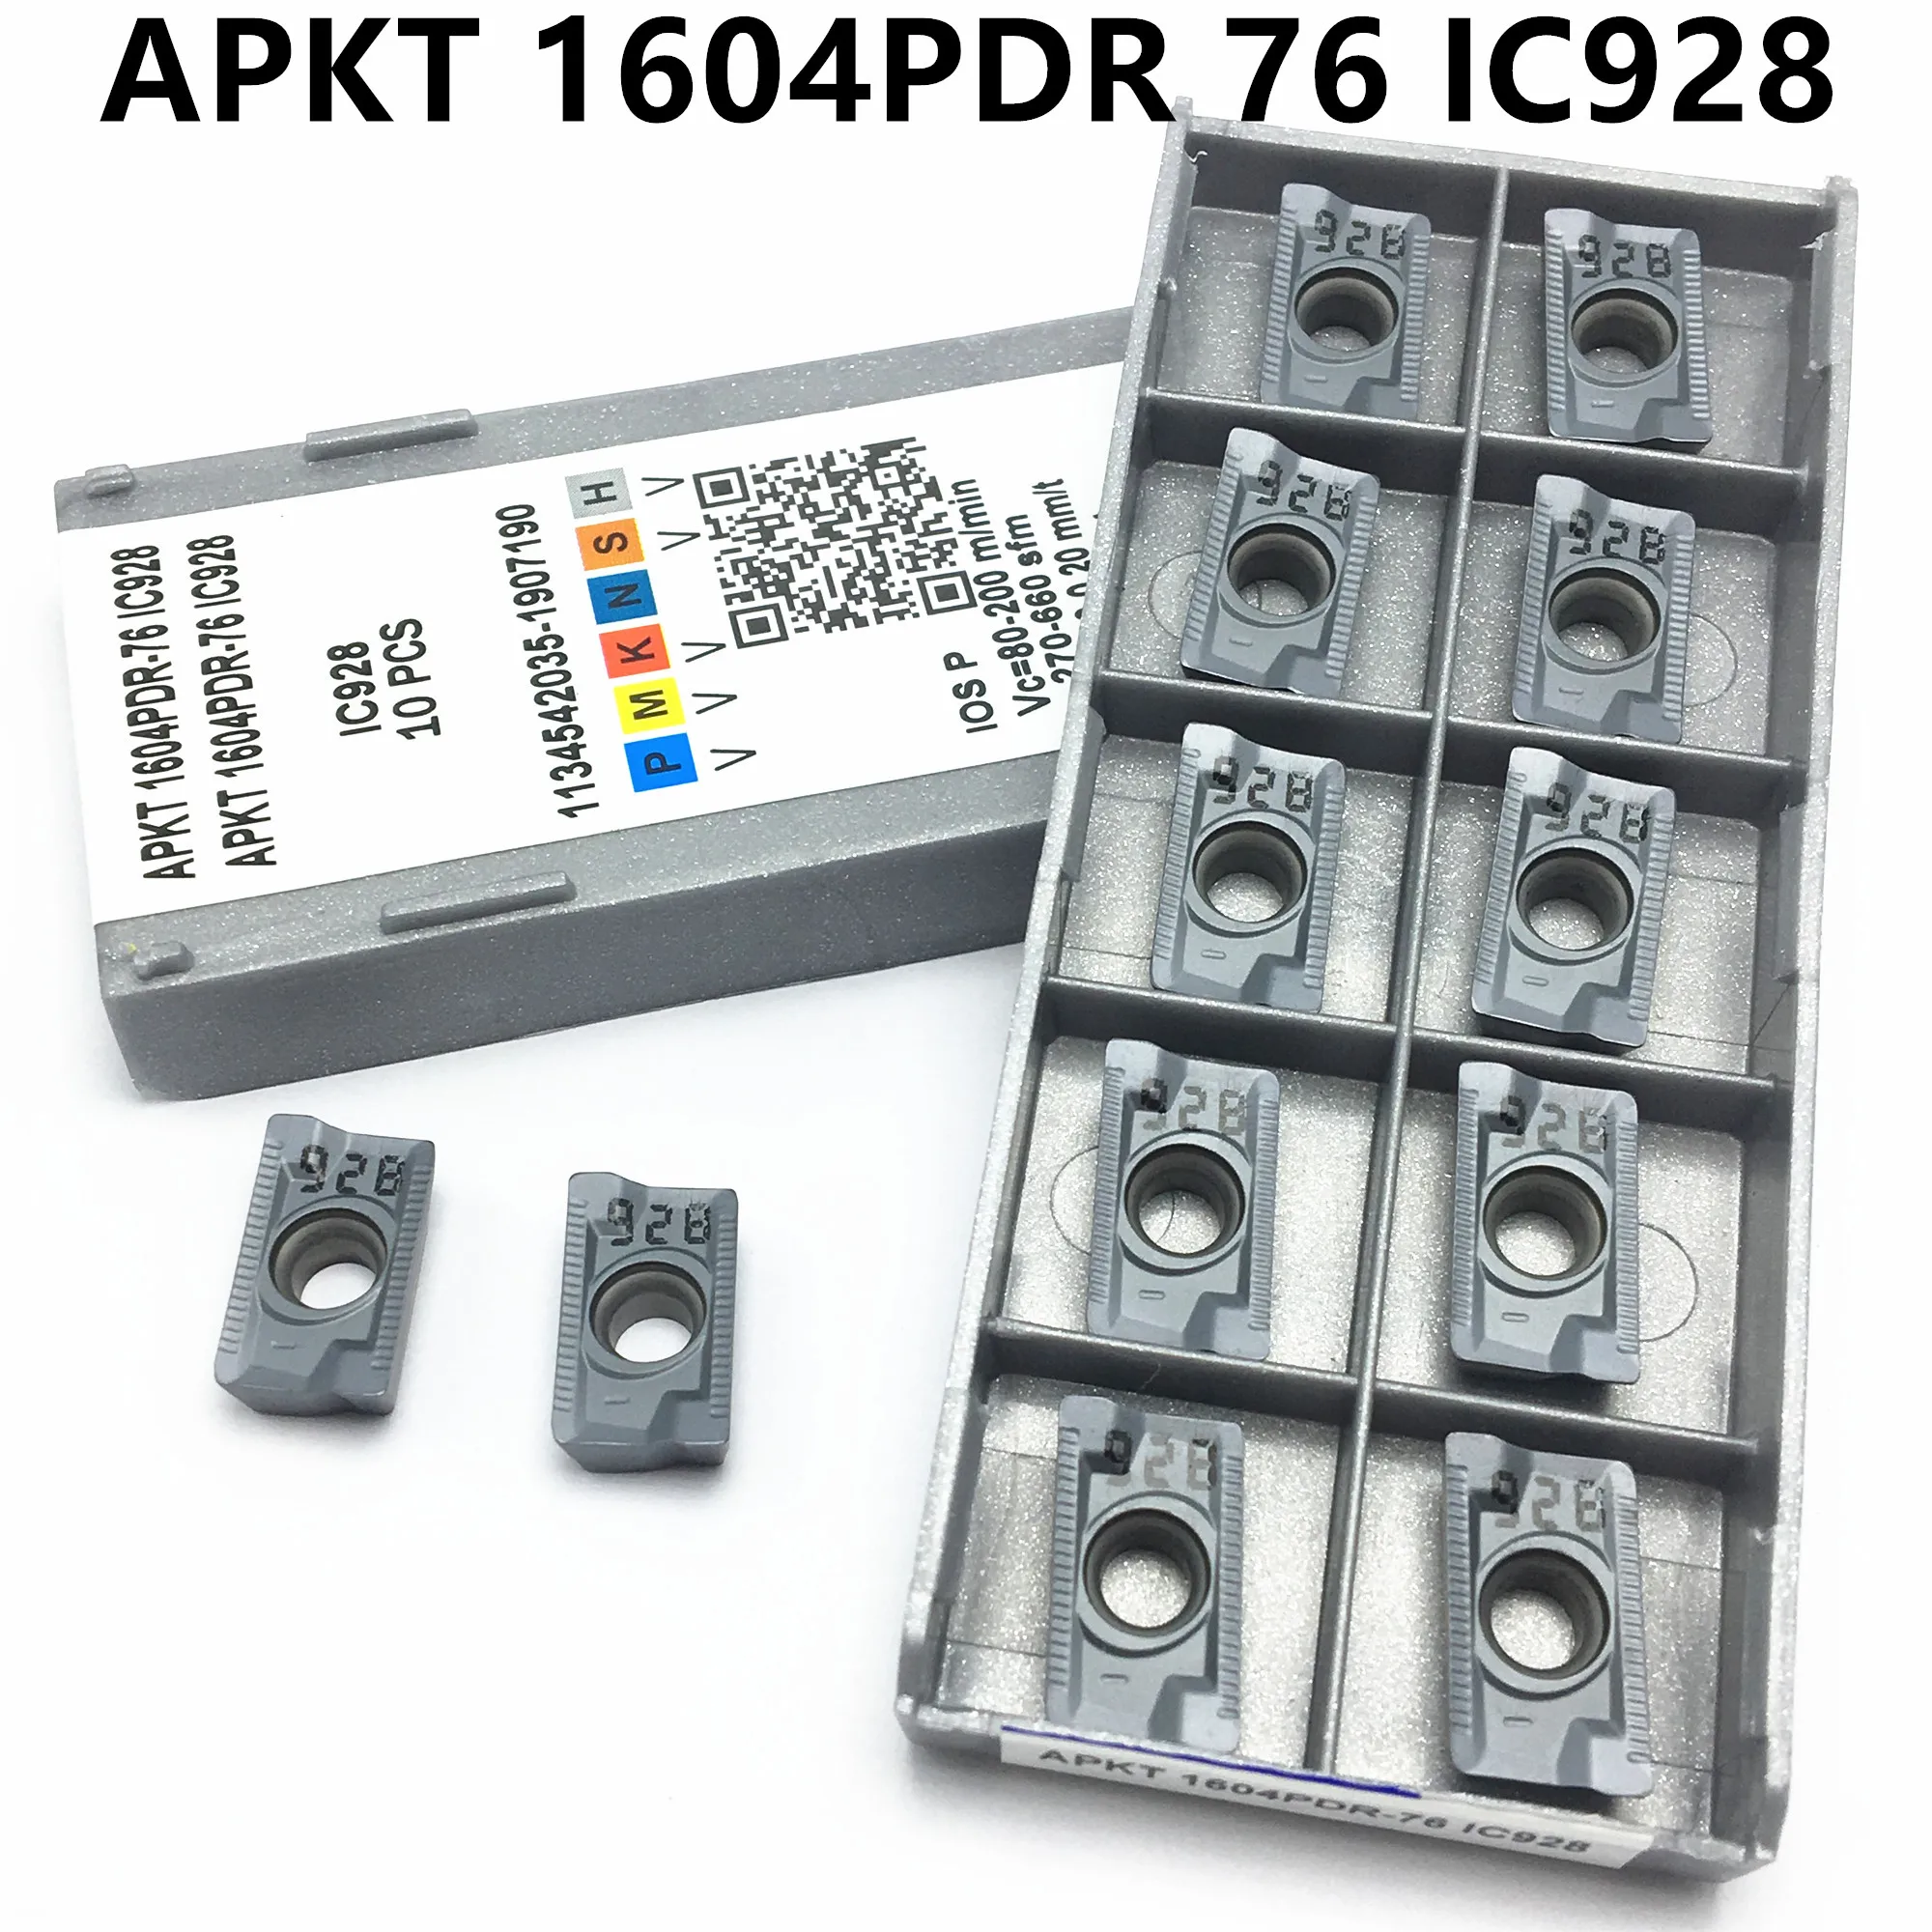 10PCS APKT1604 PDER 76 IC928 obračanja orodje karbida vstavite orodje, stružnica APKT 1604 obračanja vstavite rezkanje rezalnik